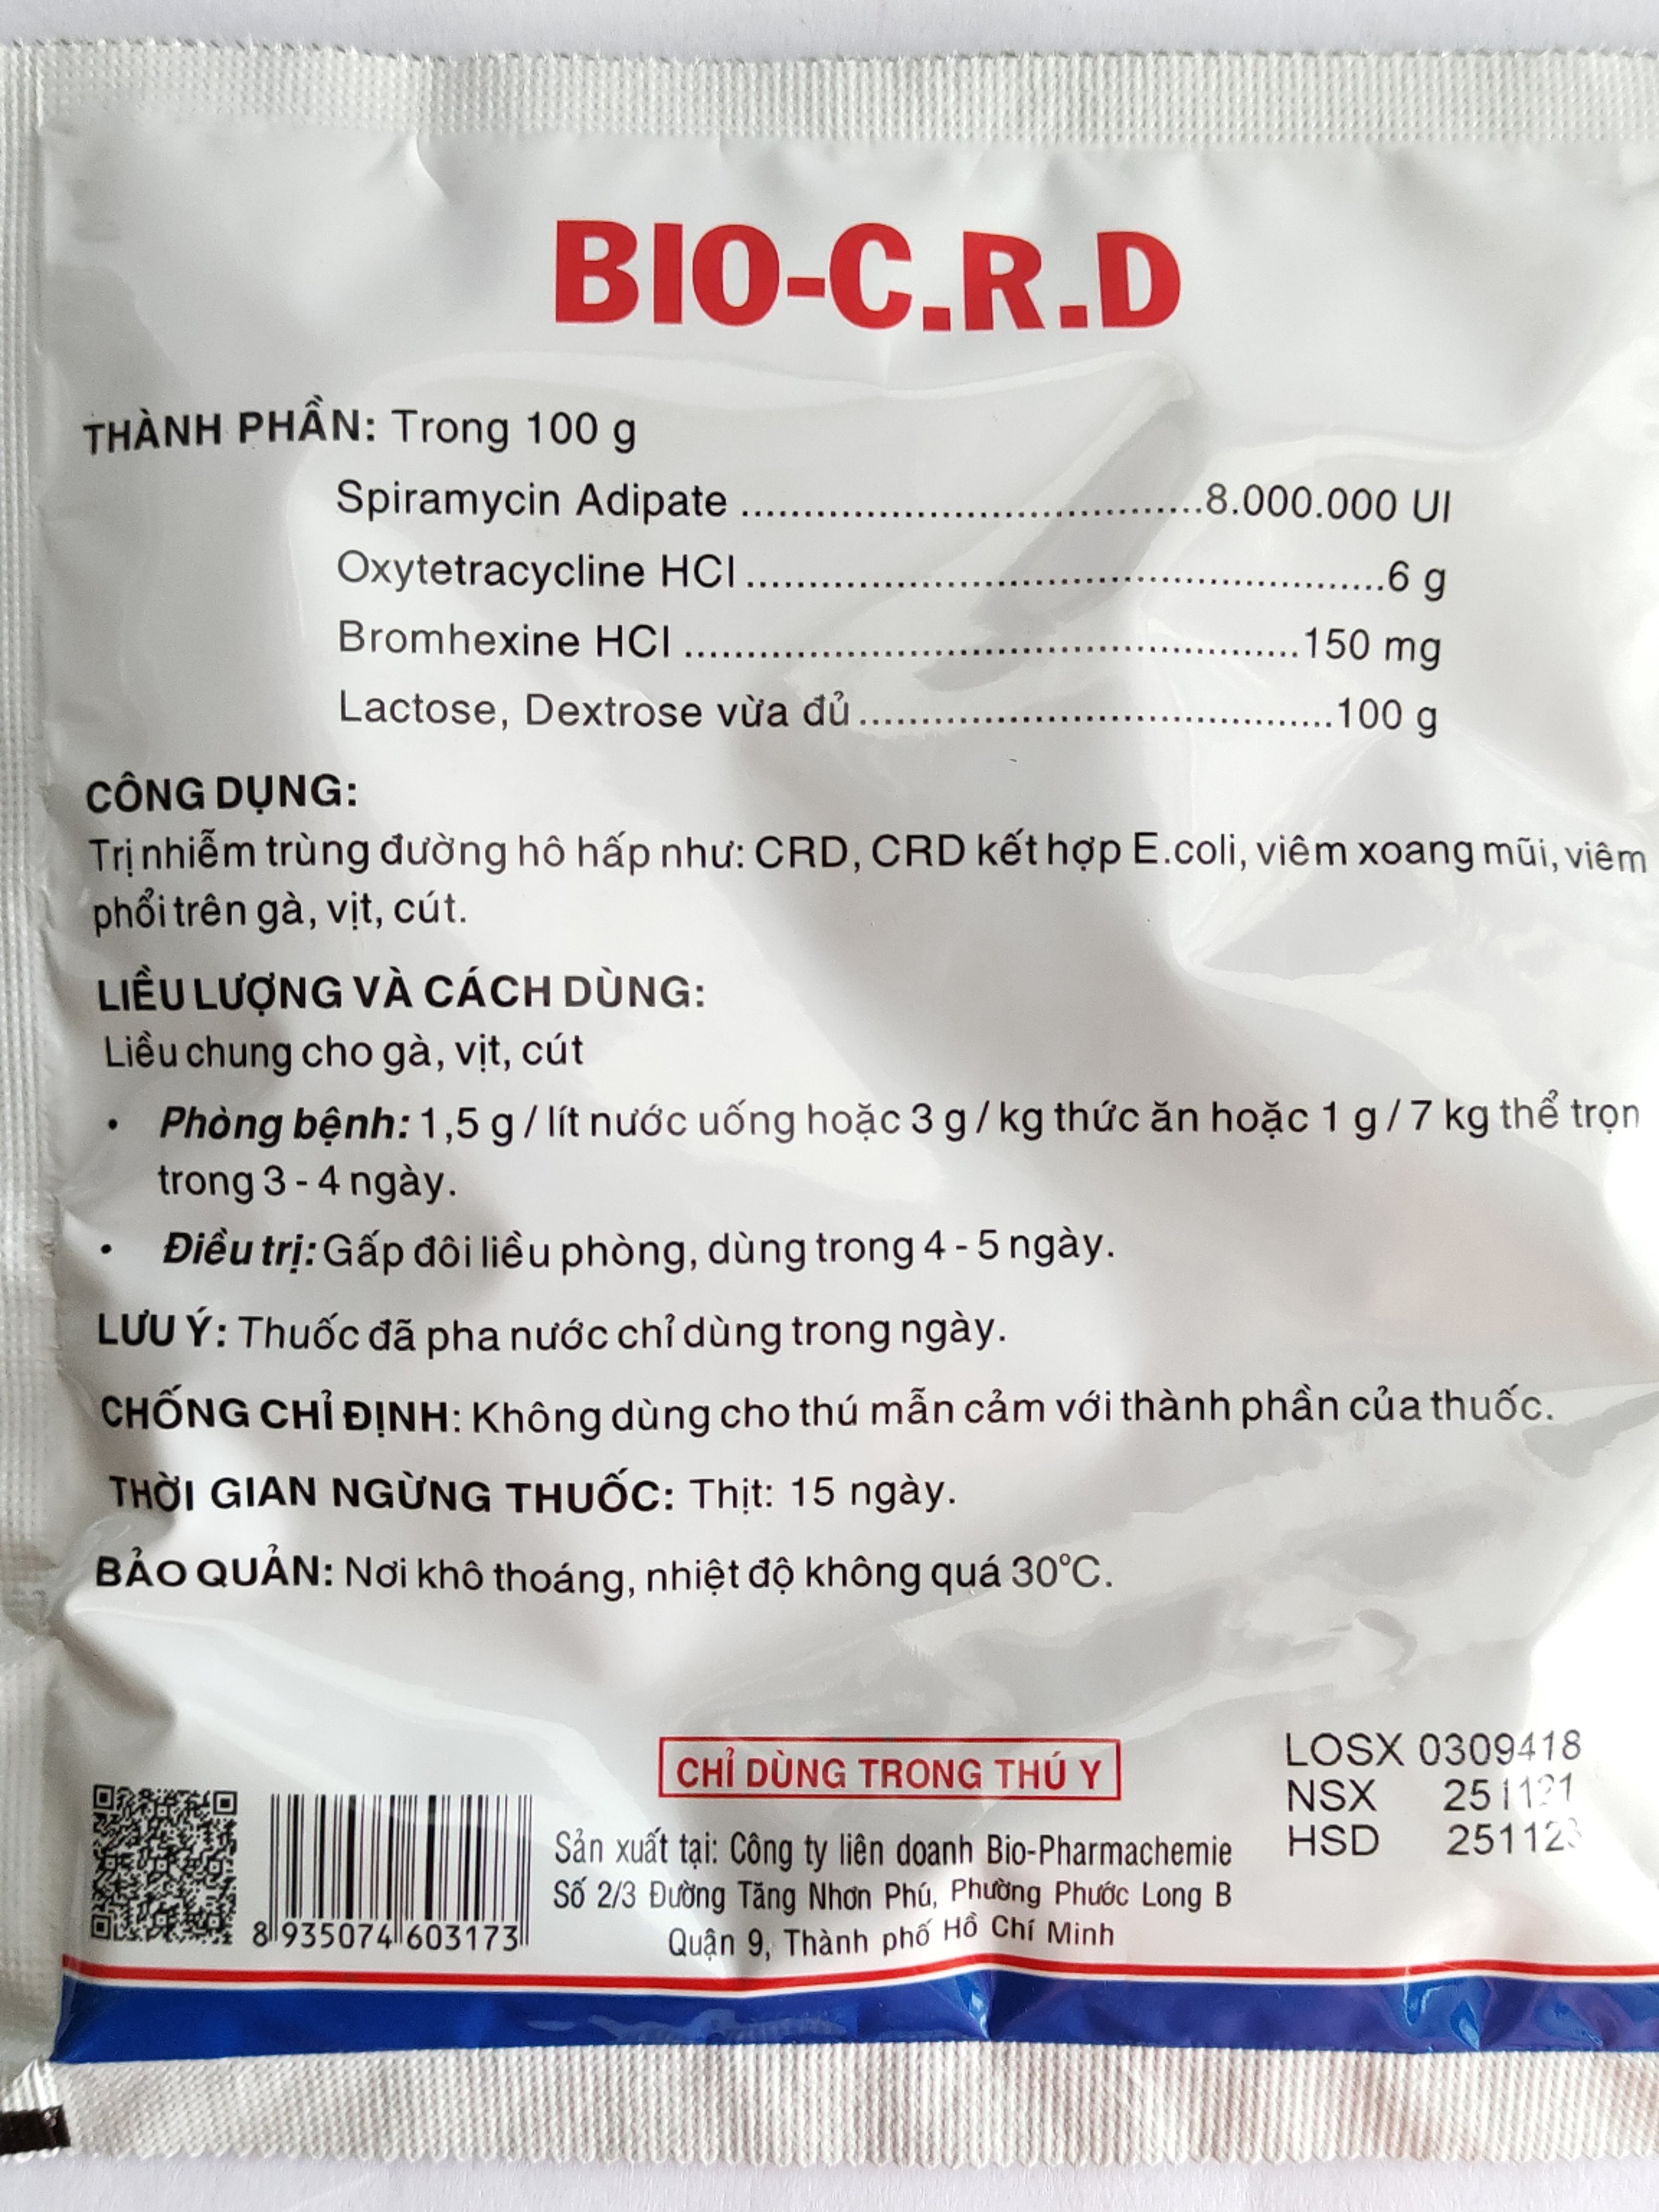 BIO C R D 100G Thuốc bột hoà tan hoặc trộn thức ăn đặc trị bệnh crd c.crd trên gà vịt